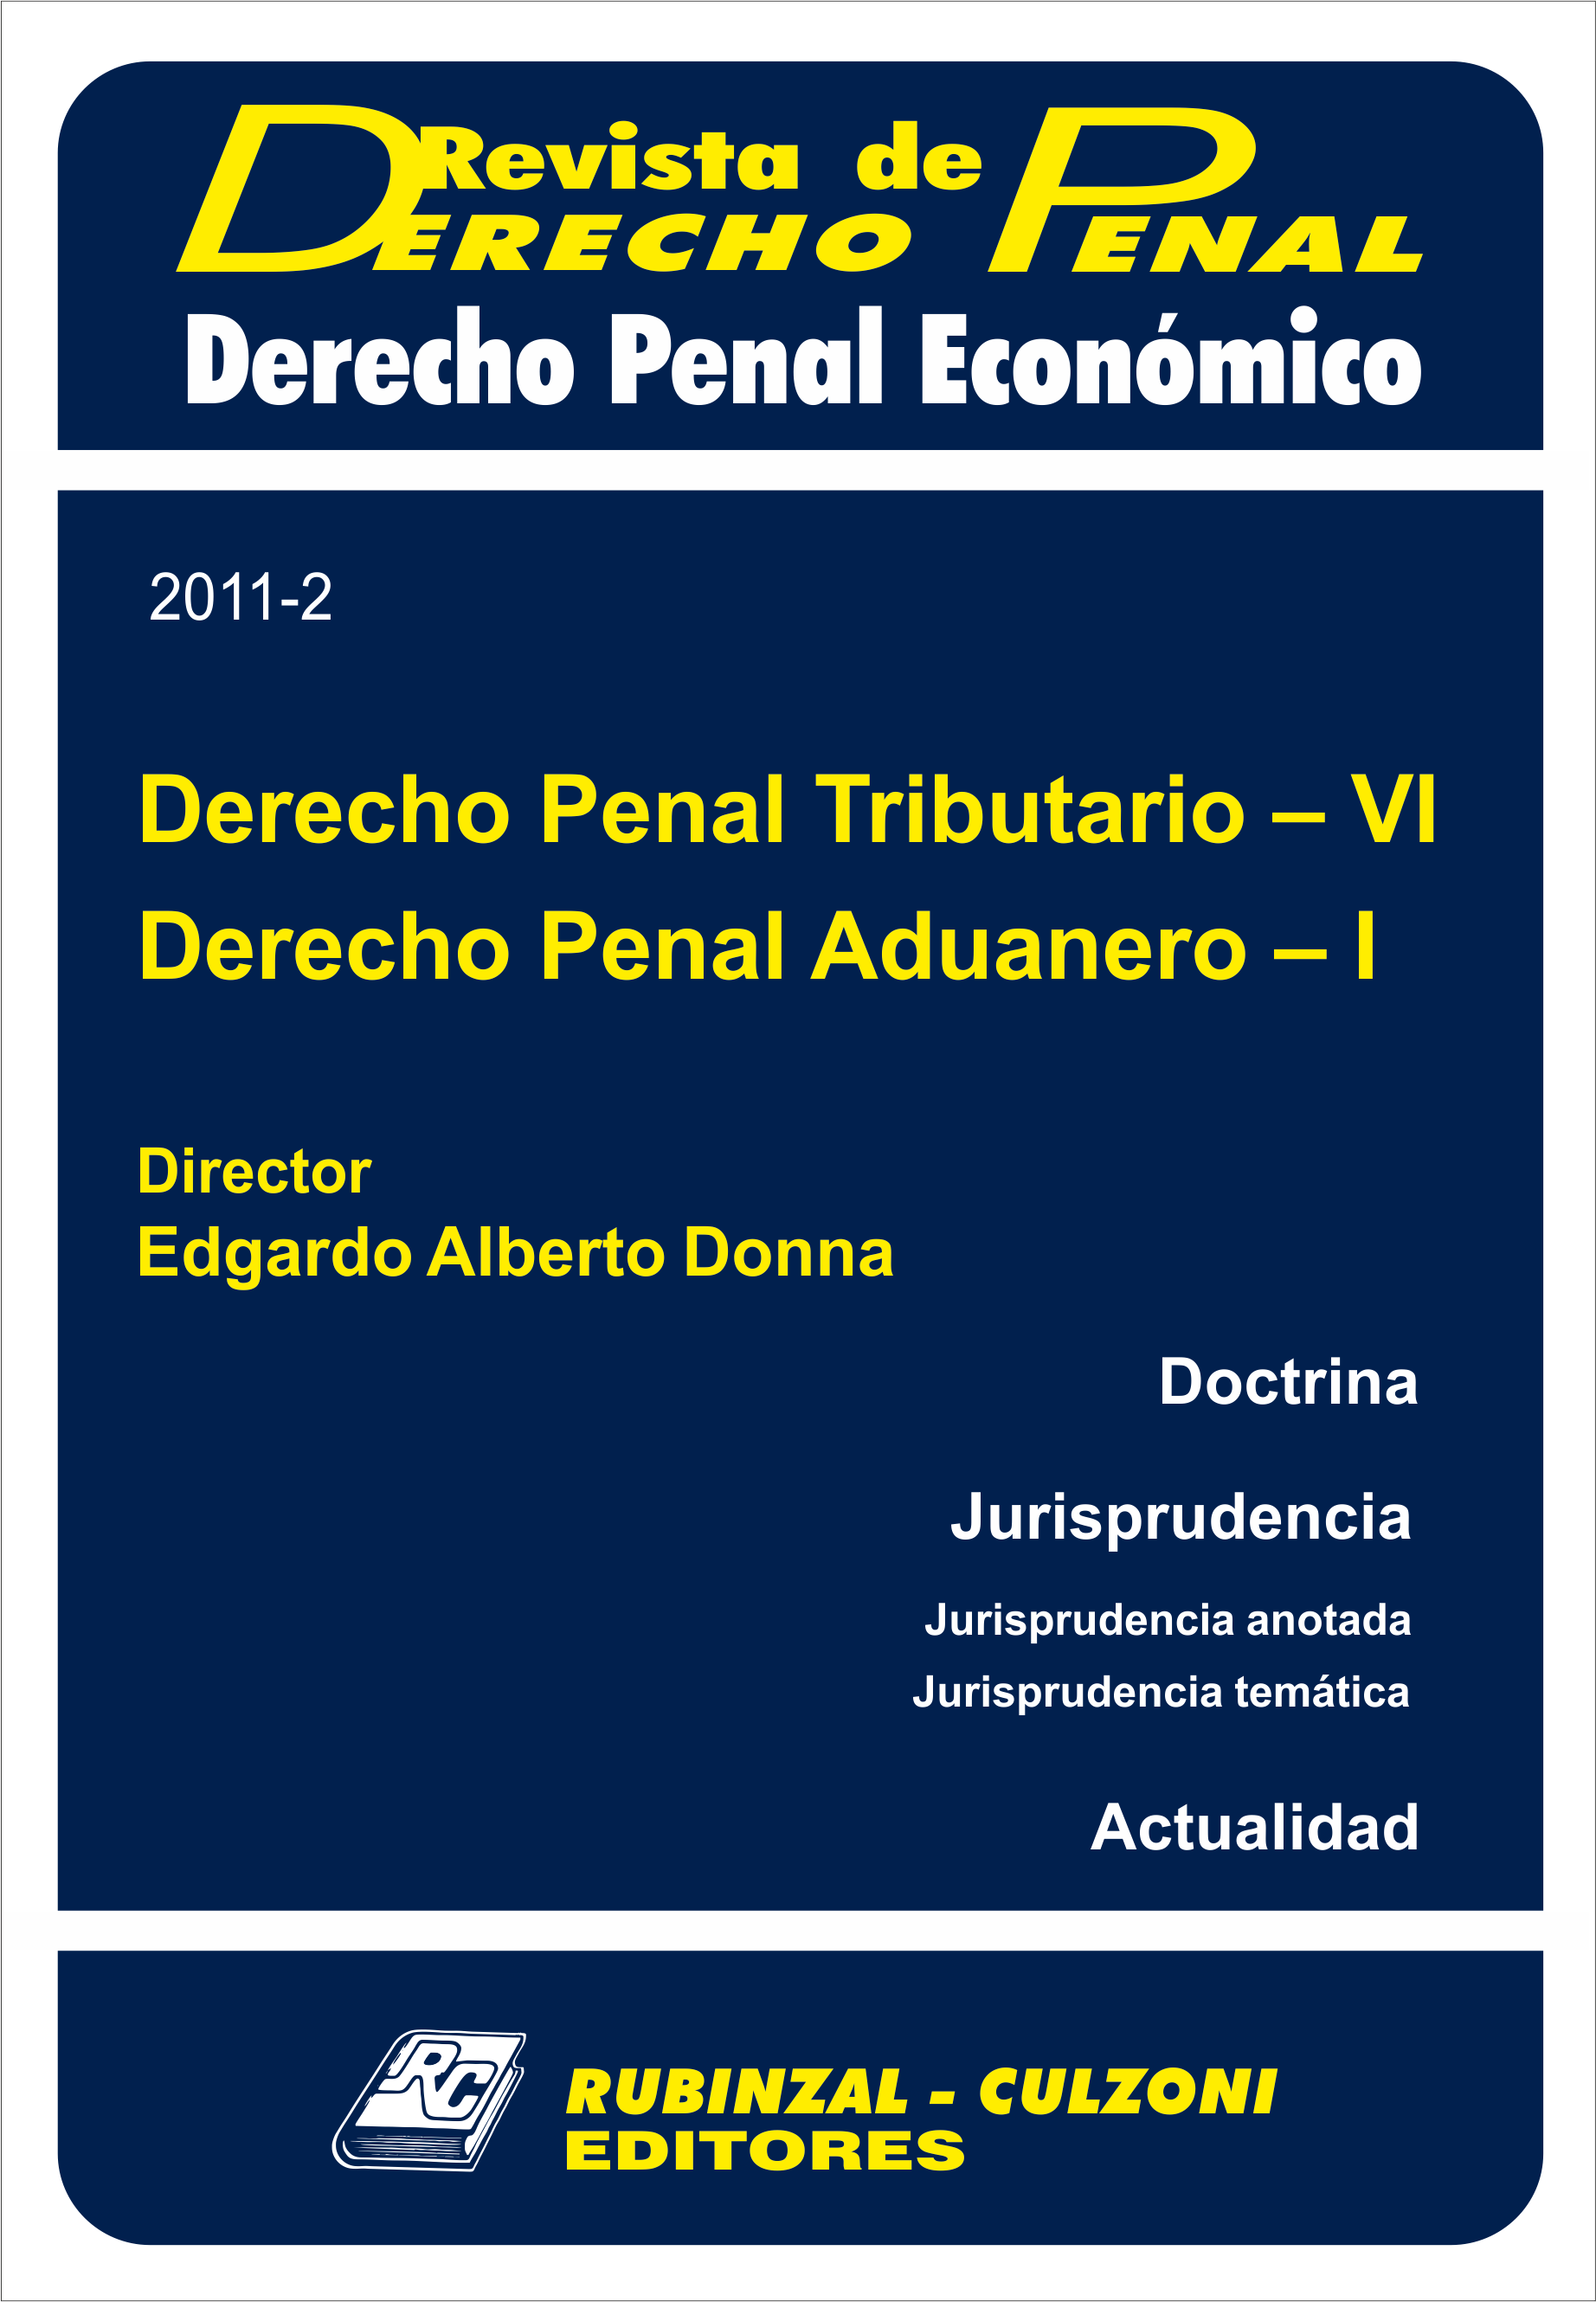 Derecho Penal Tributario - VI y Derecho Penal Aduanero - I. [2011-2]